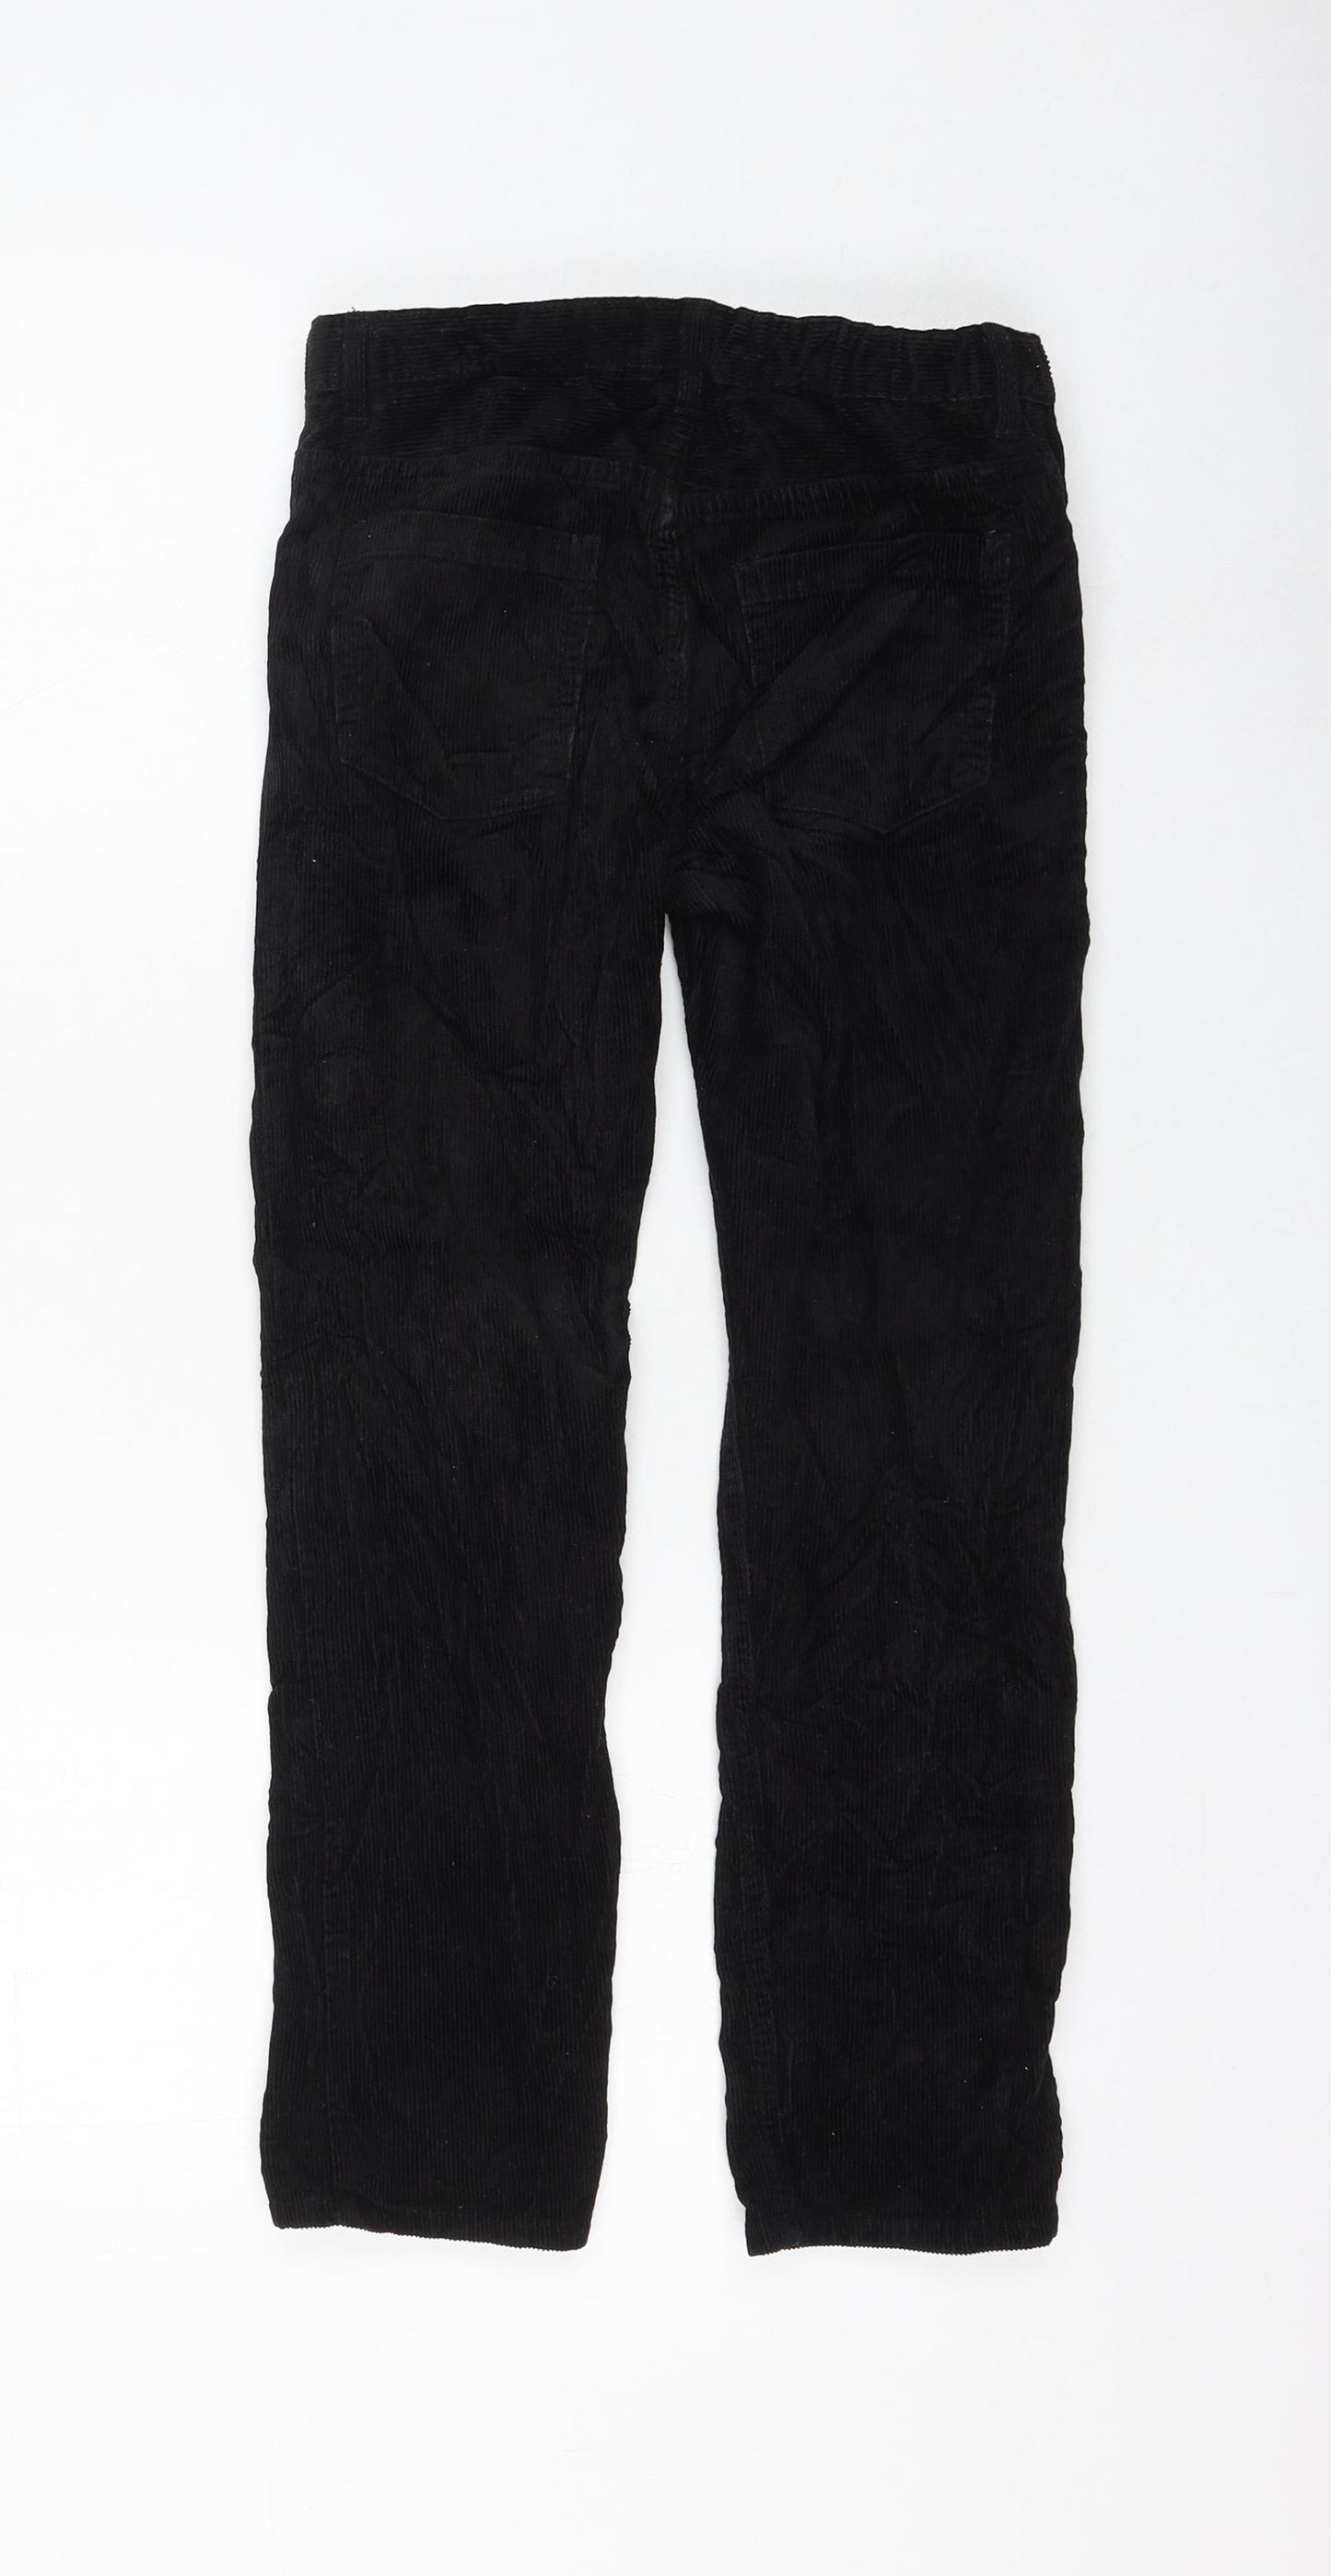 H&M Girls Black Cotton Chino Trousers Size 9-10 Years Regular Zip